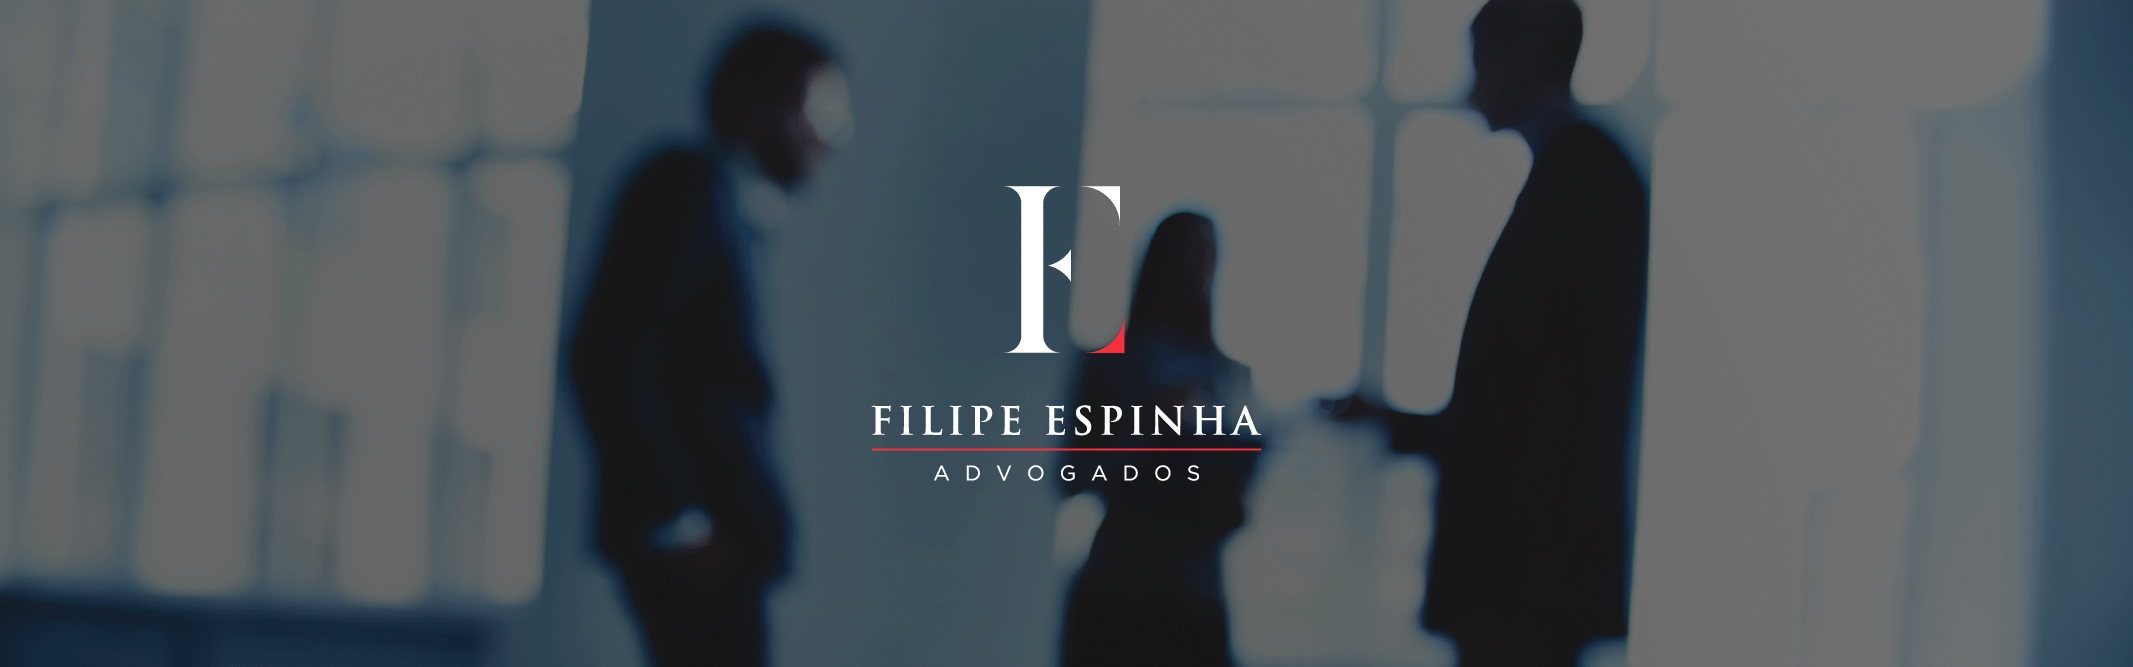 Filipe Espinha